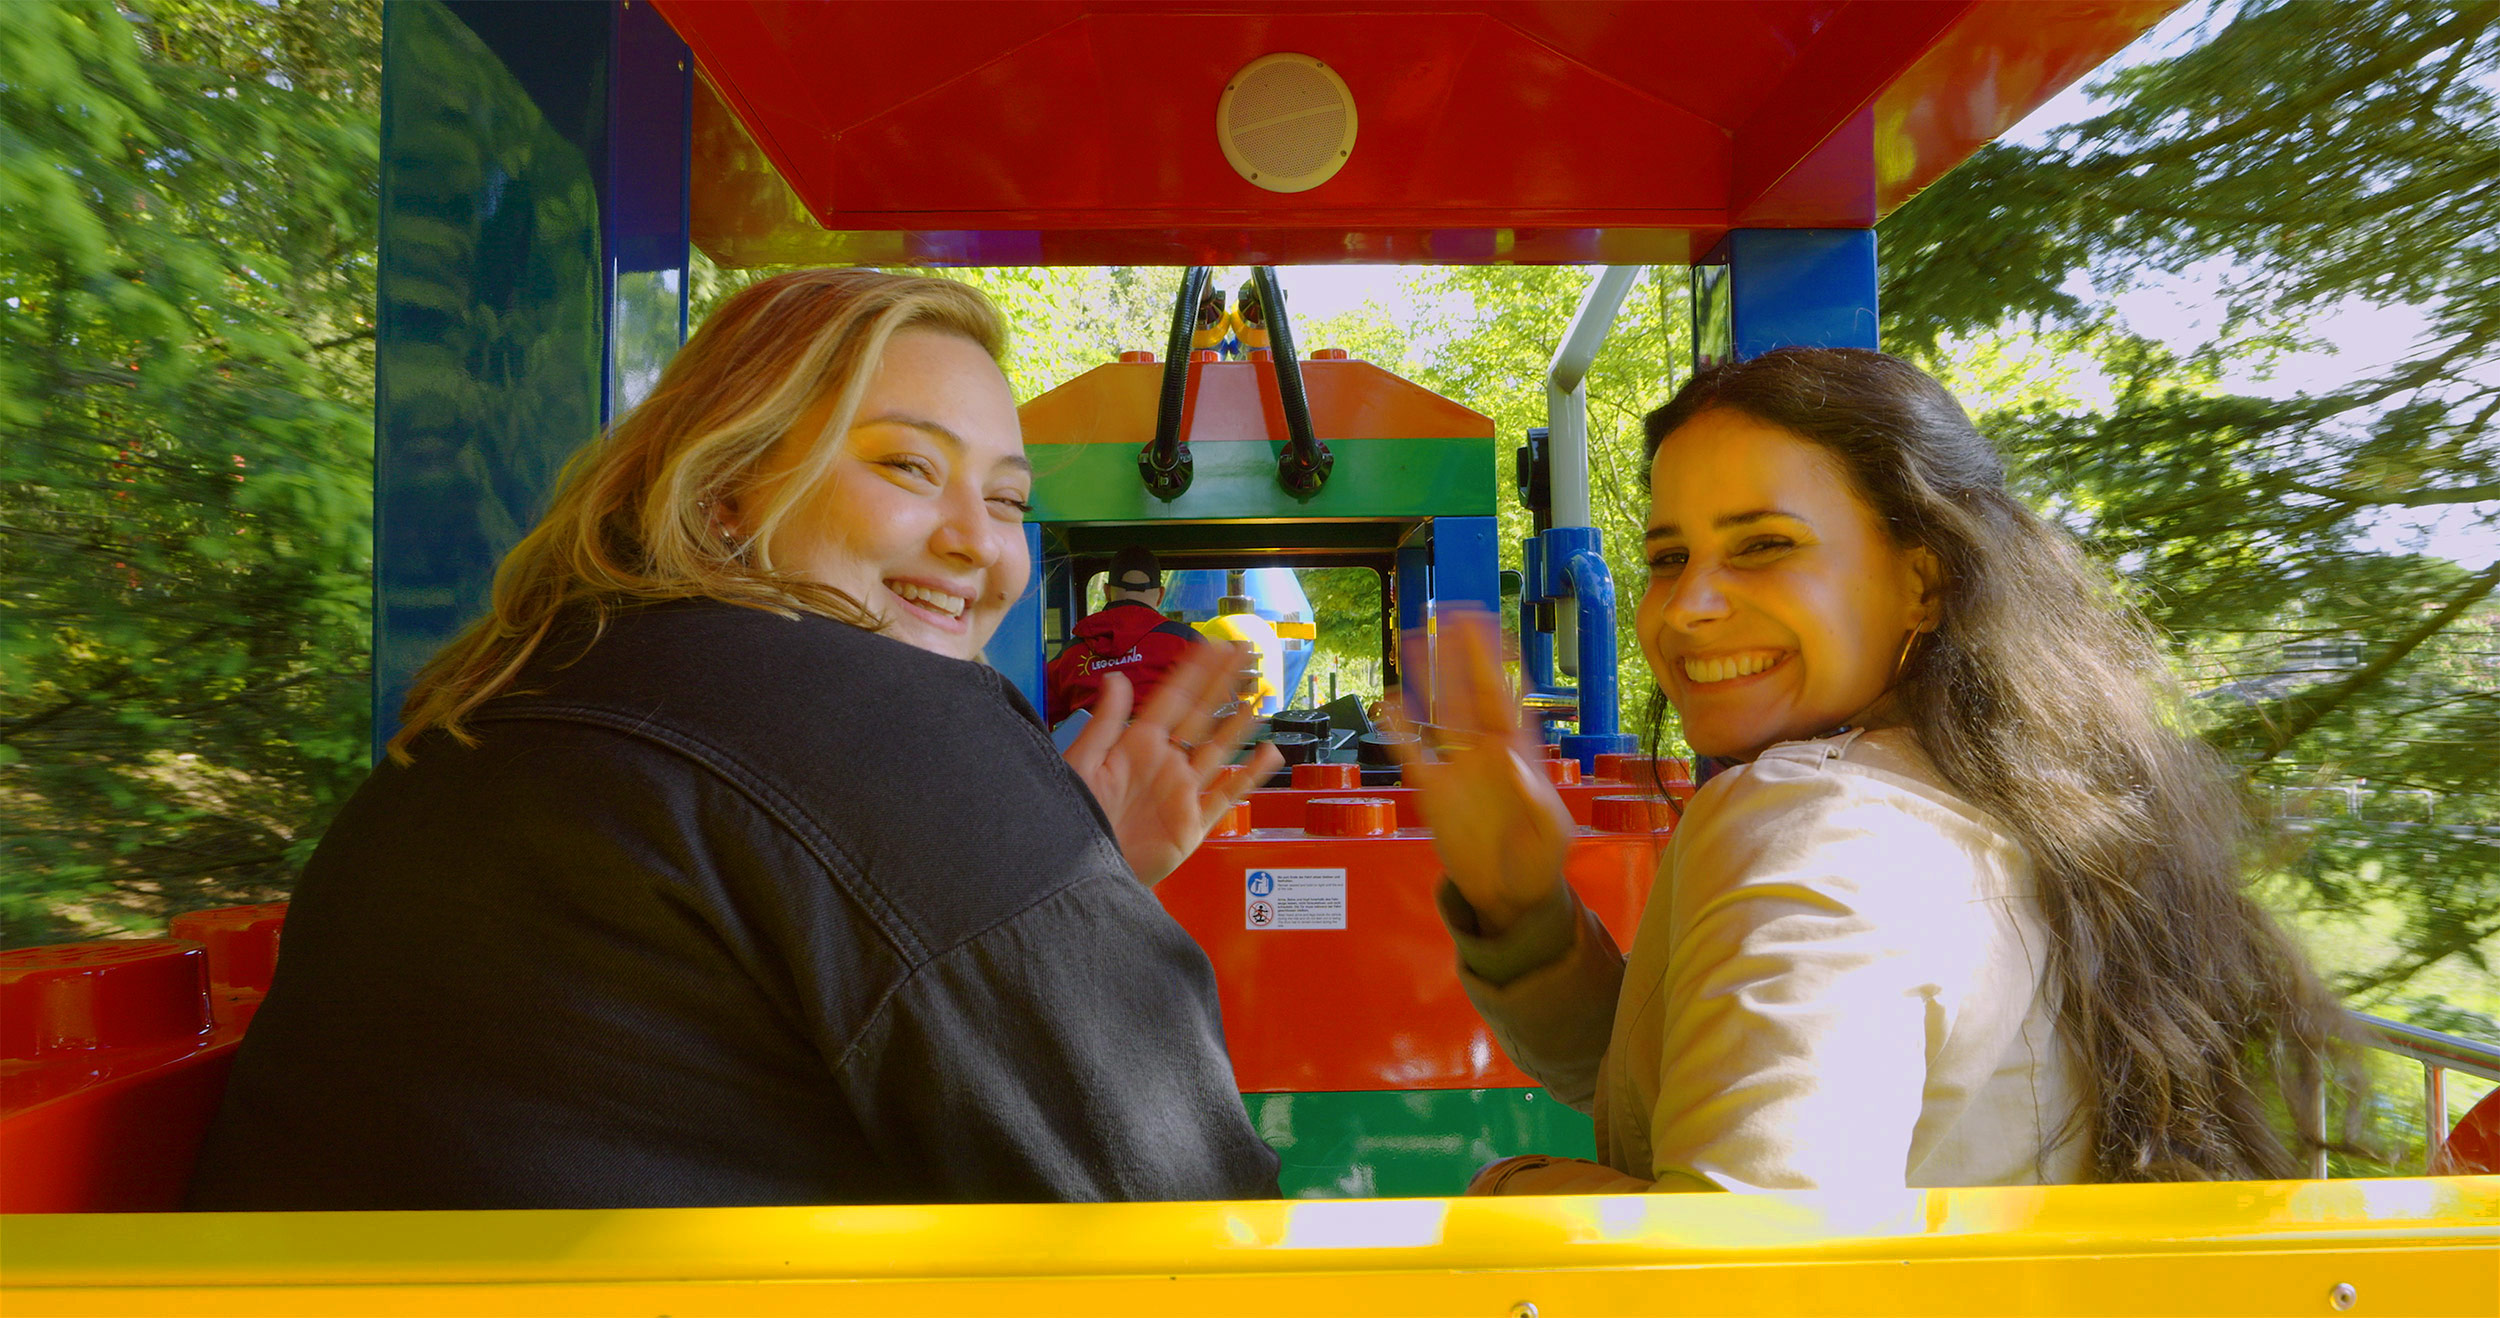 Zwei lachende Frauen, die eine Parkrundfahrt im LEGOLAND Express, einem bunten Zug, von LEGOLAND Deutschland machen und sich nach hinten drehen, um in die Kamera zu winken.